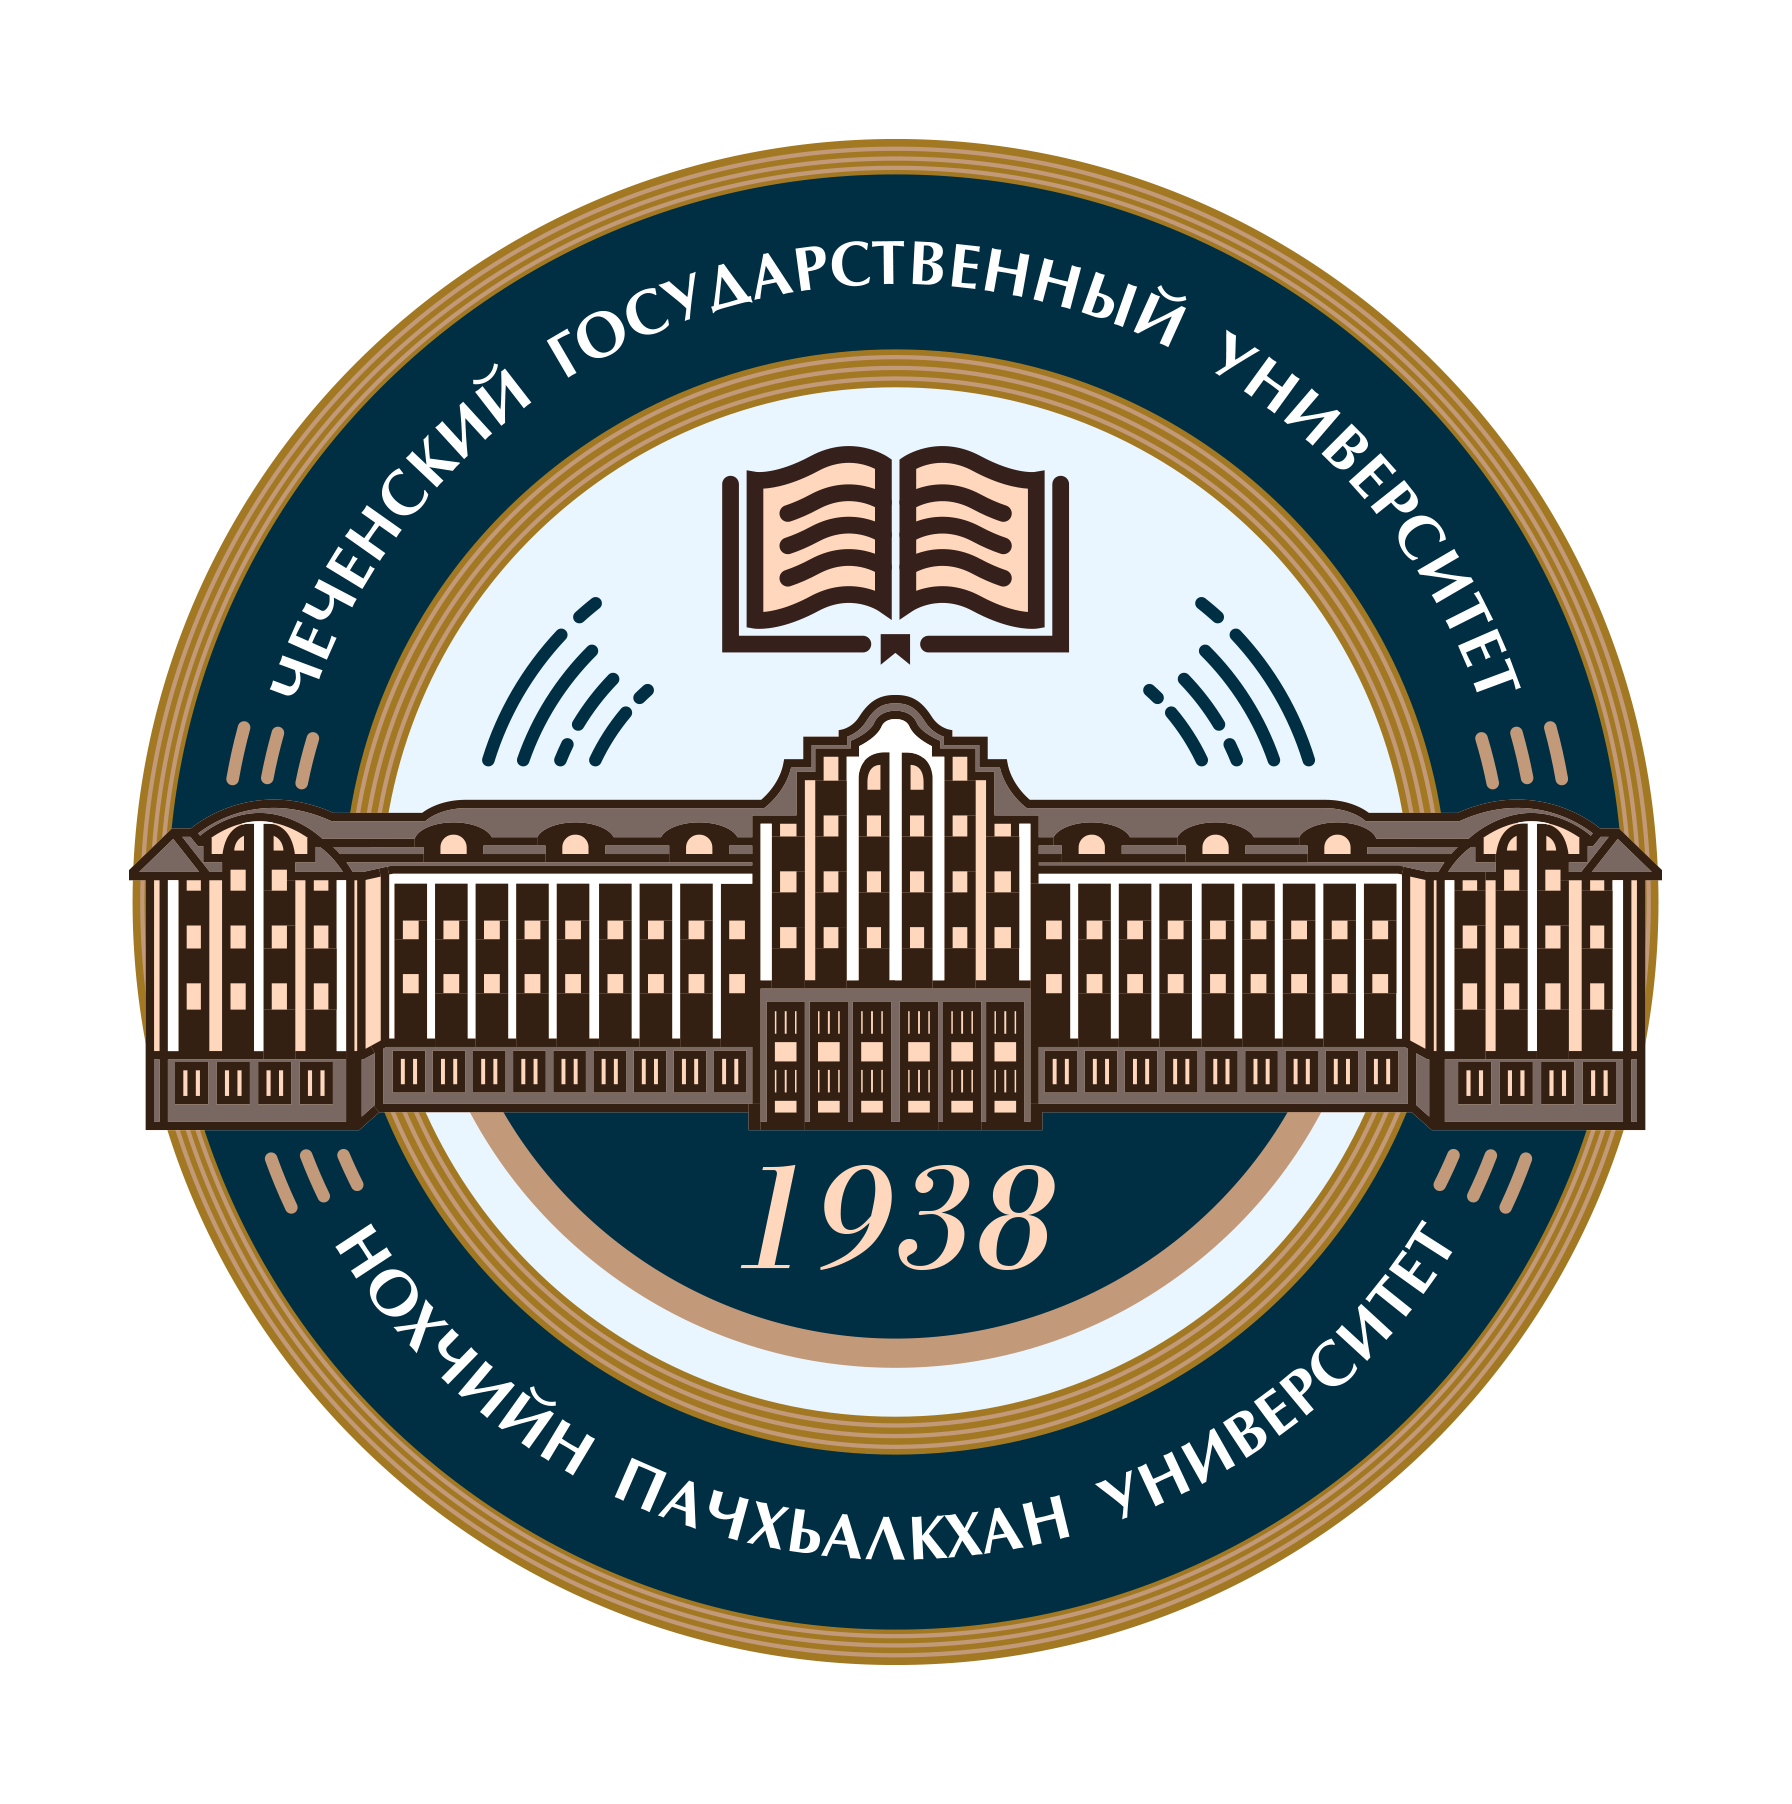 Чеченский государственный университет имени Ахмата Абдулхамидовича Кадырова